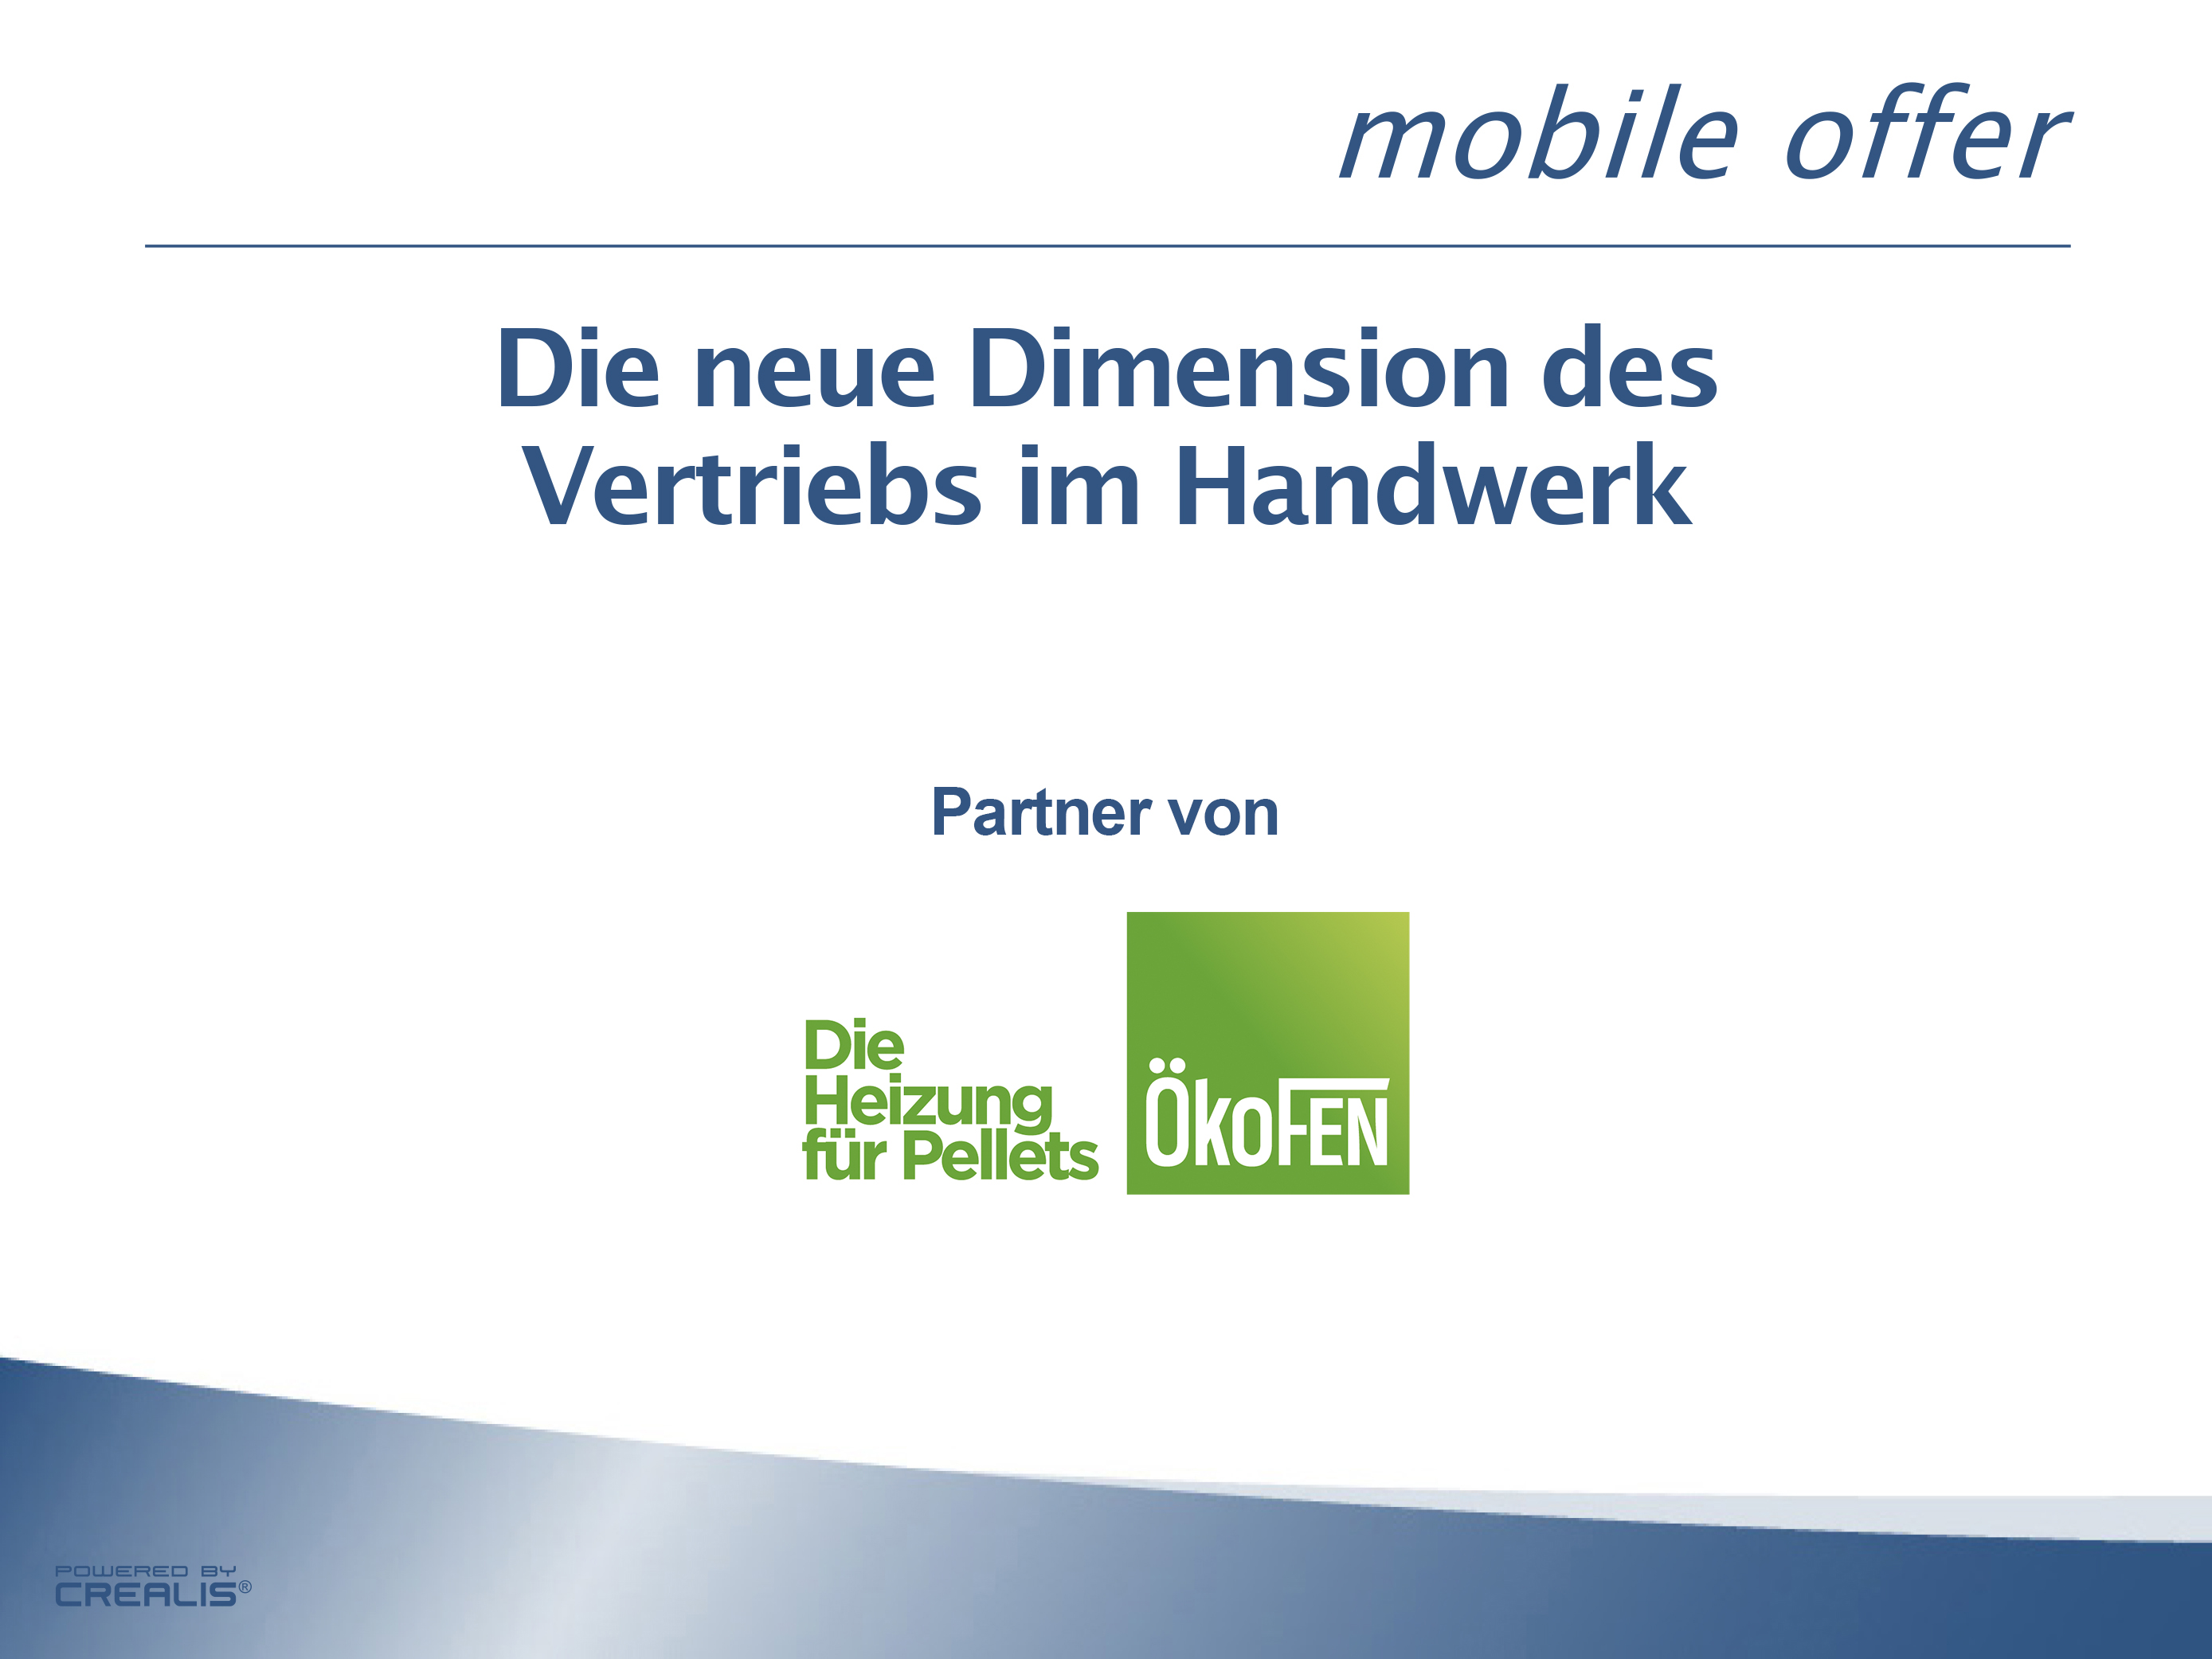 ÖkoFEN neuer mobile offer Partner